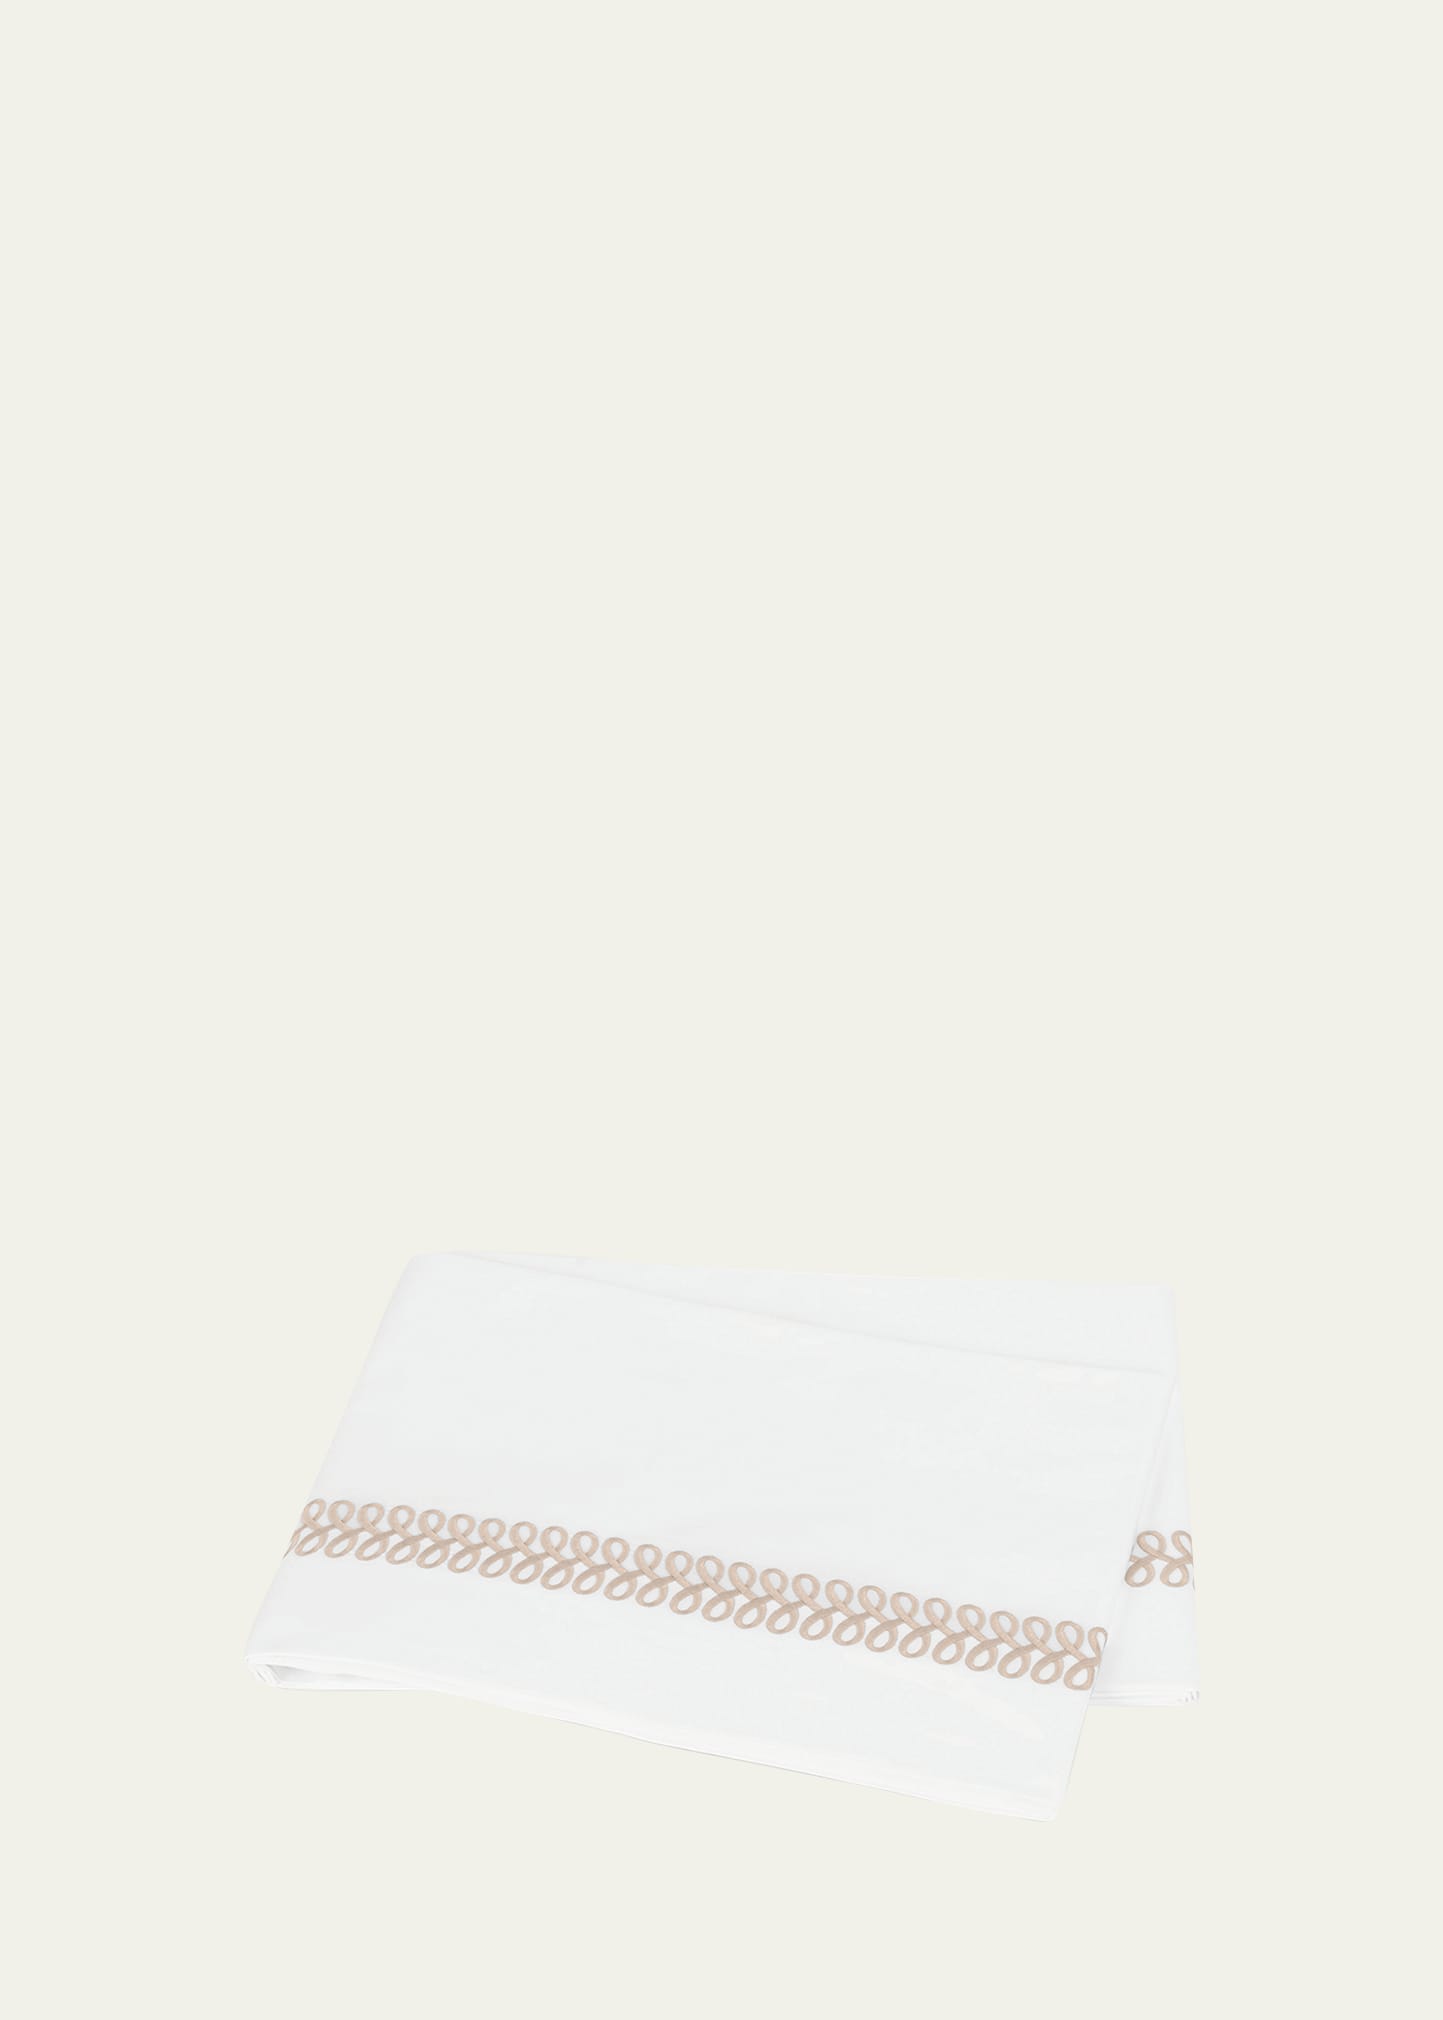 Astor Braid Full/Queen Flat Sheet